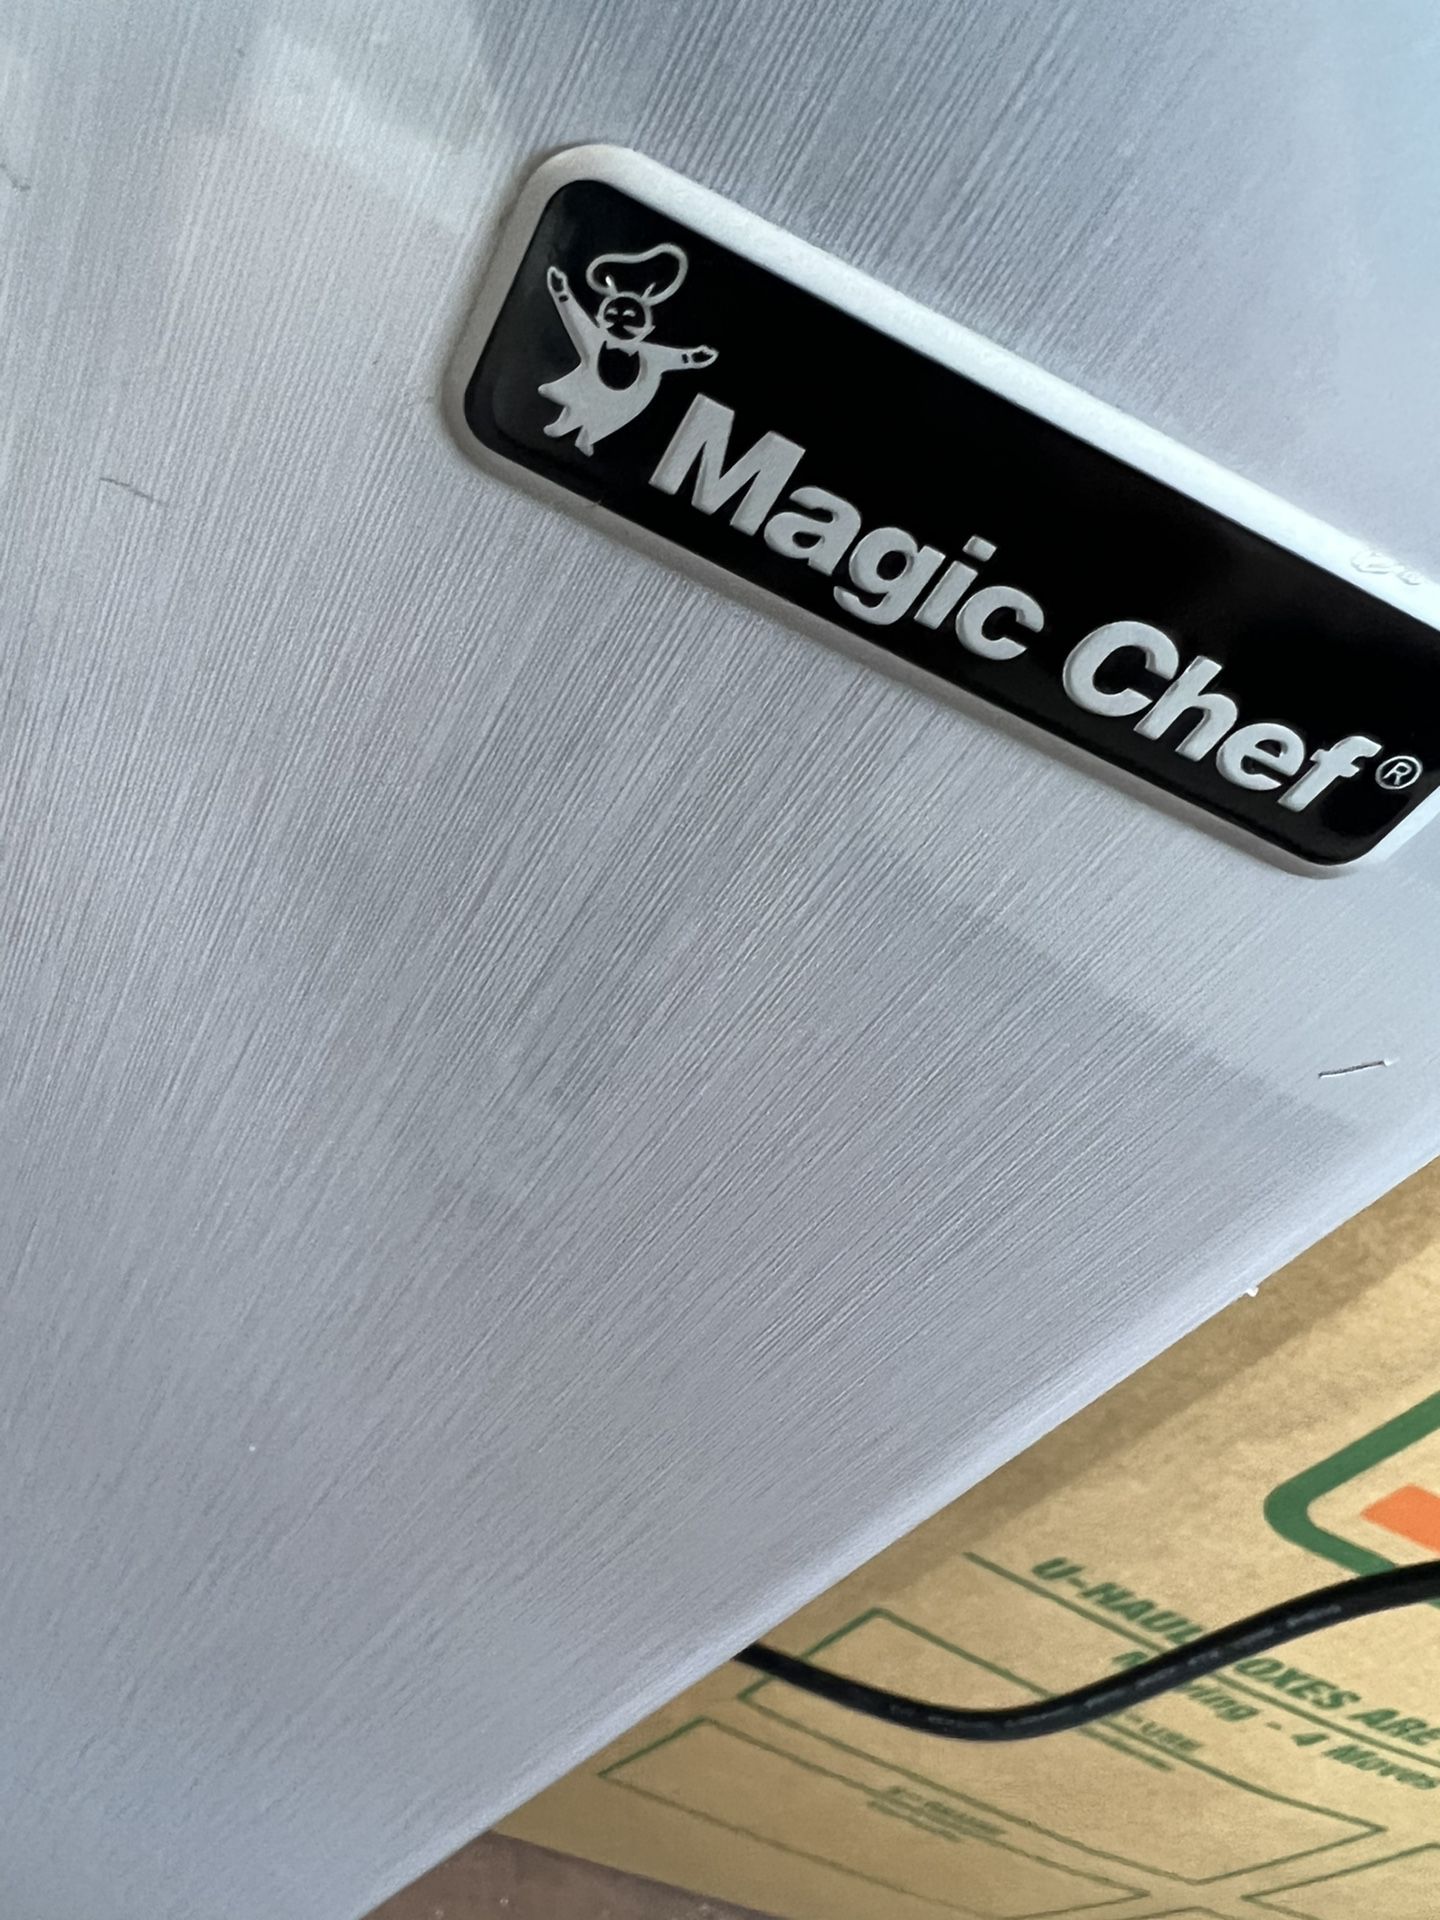 Magic Chef Fridge